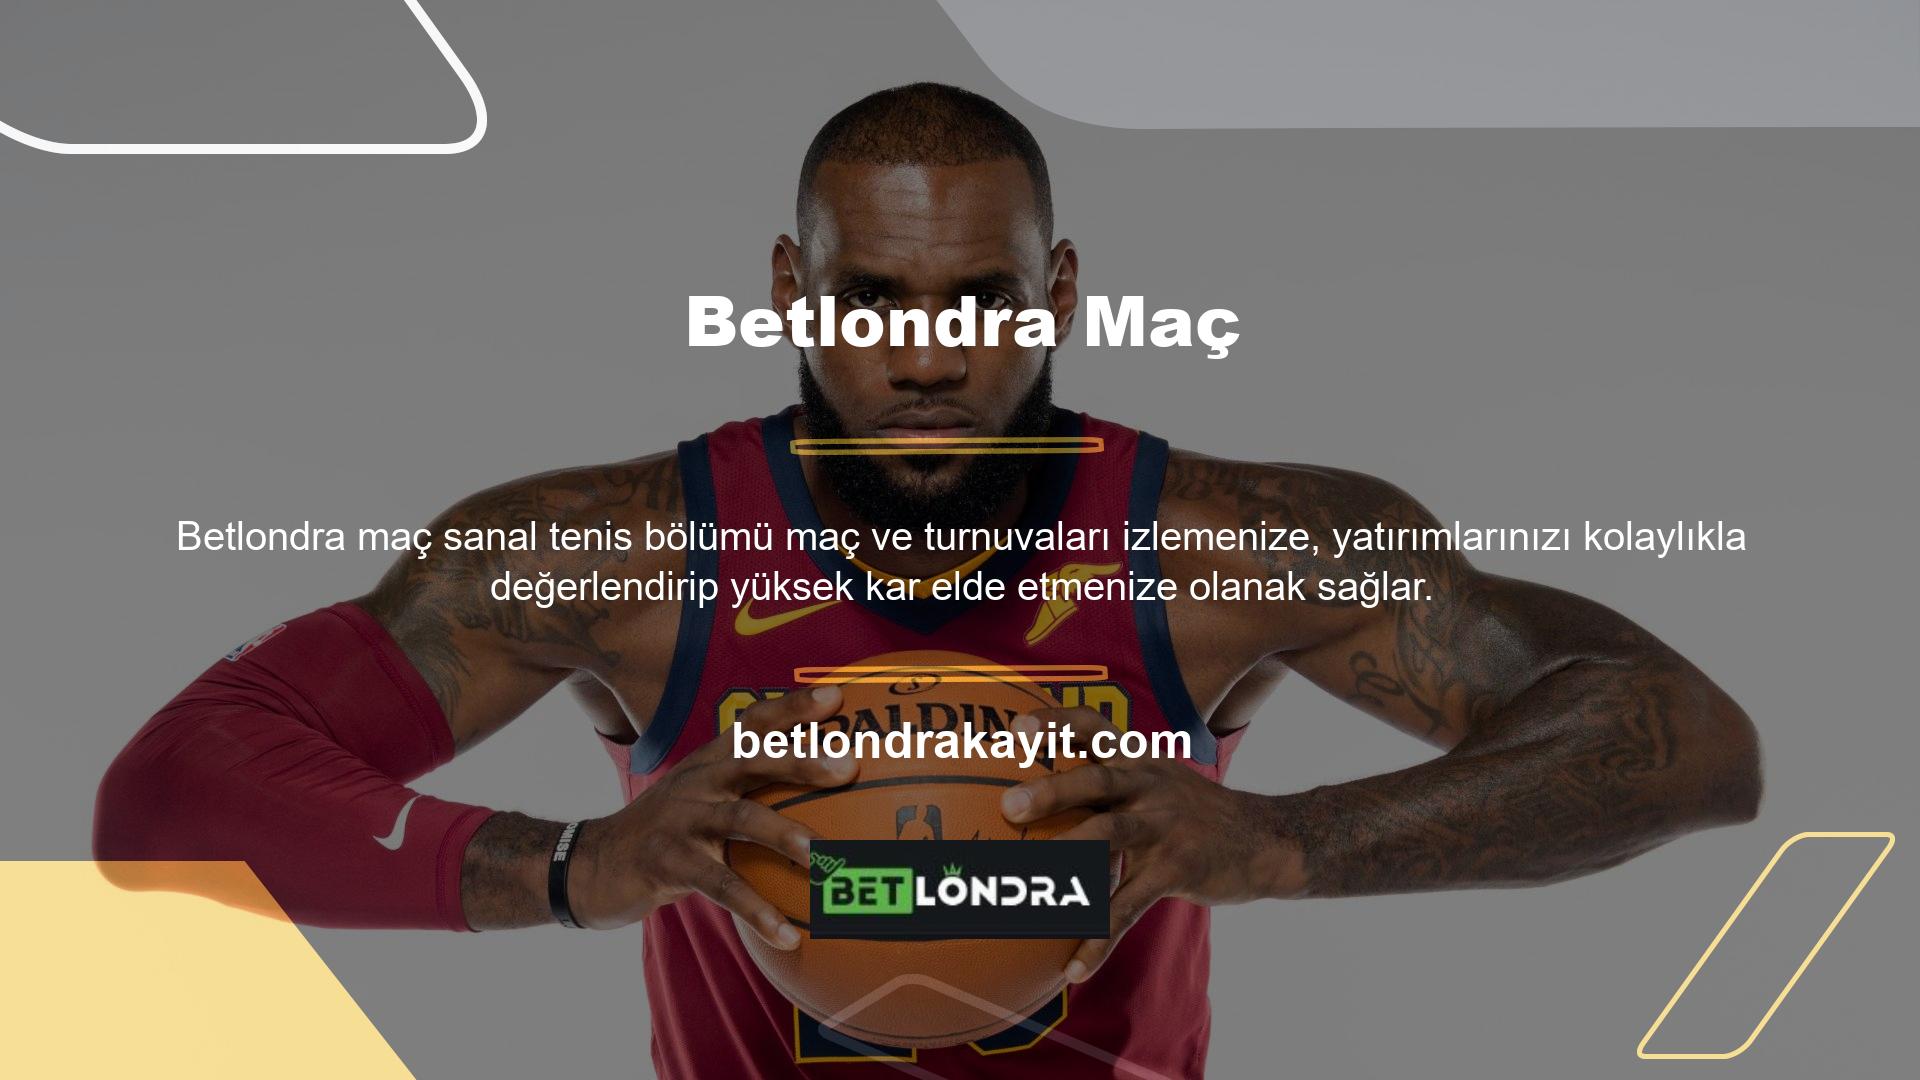 Betlondra Slot Kayıt Süreci Web sitemize kaydolmak için öncelikle web sitesinde yer alan “Kayıt Ol” butonuna tıklamanız gerekmektedir